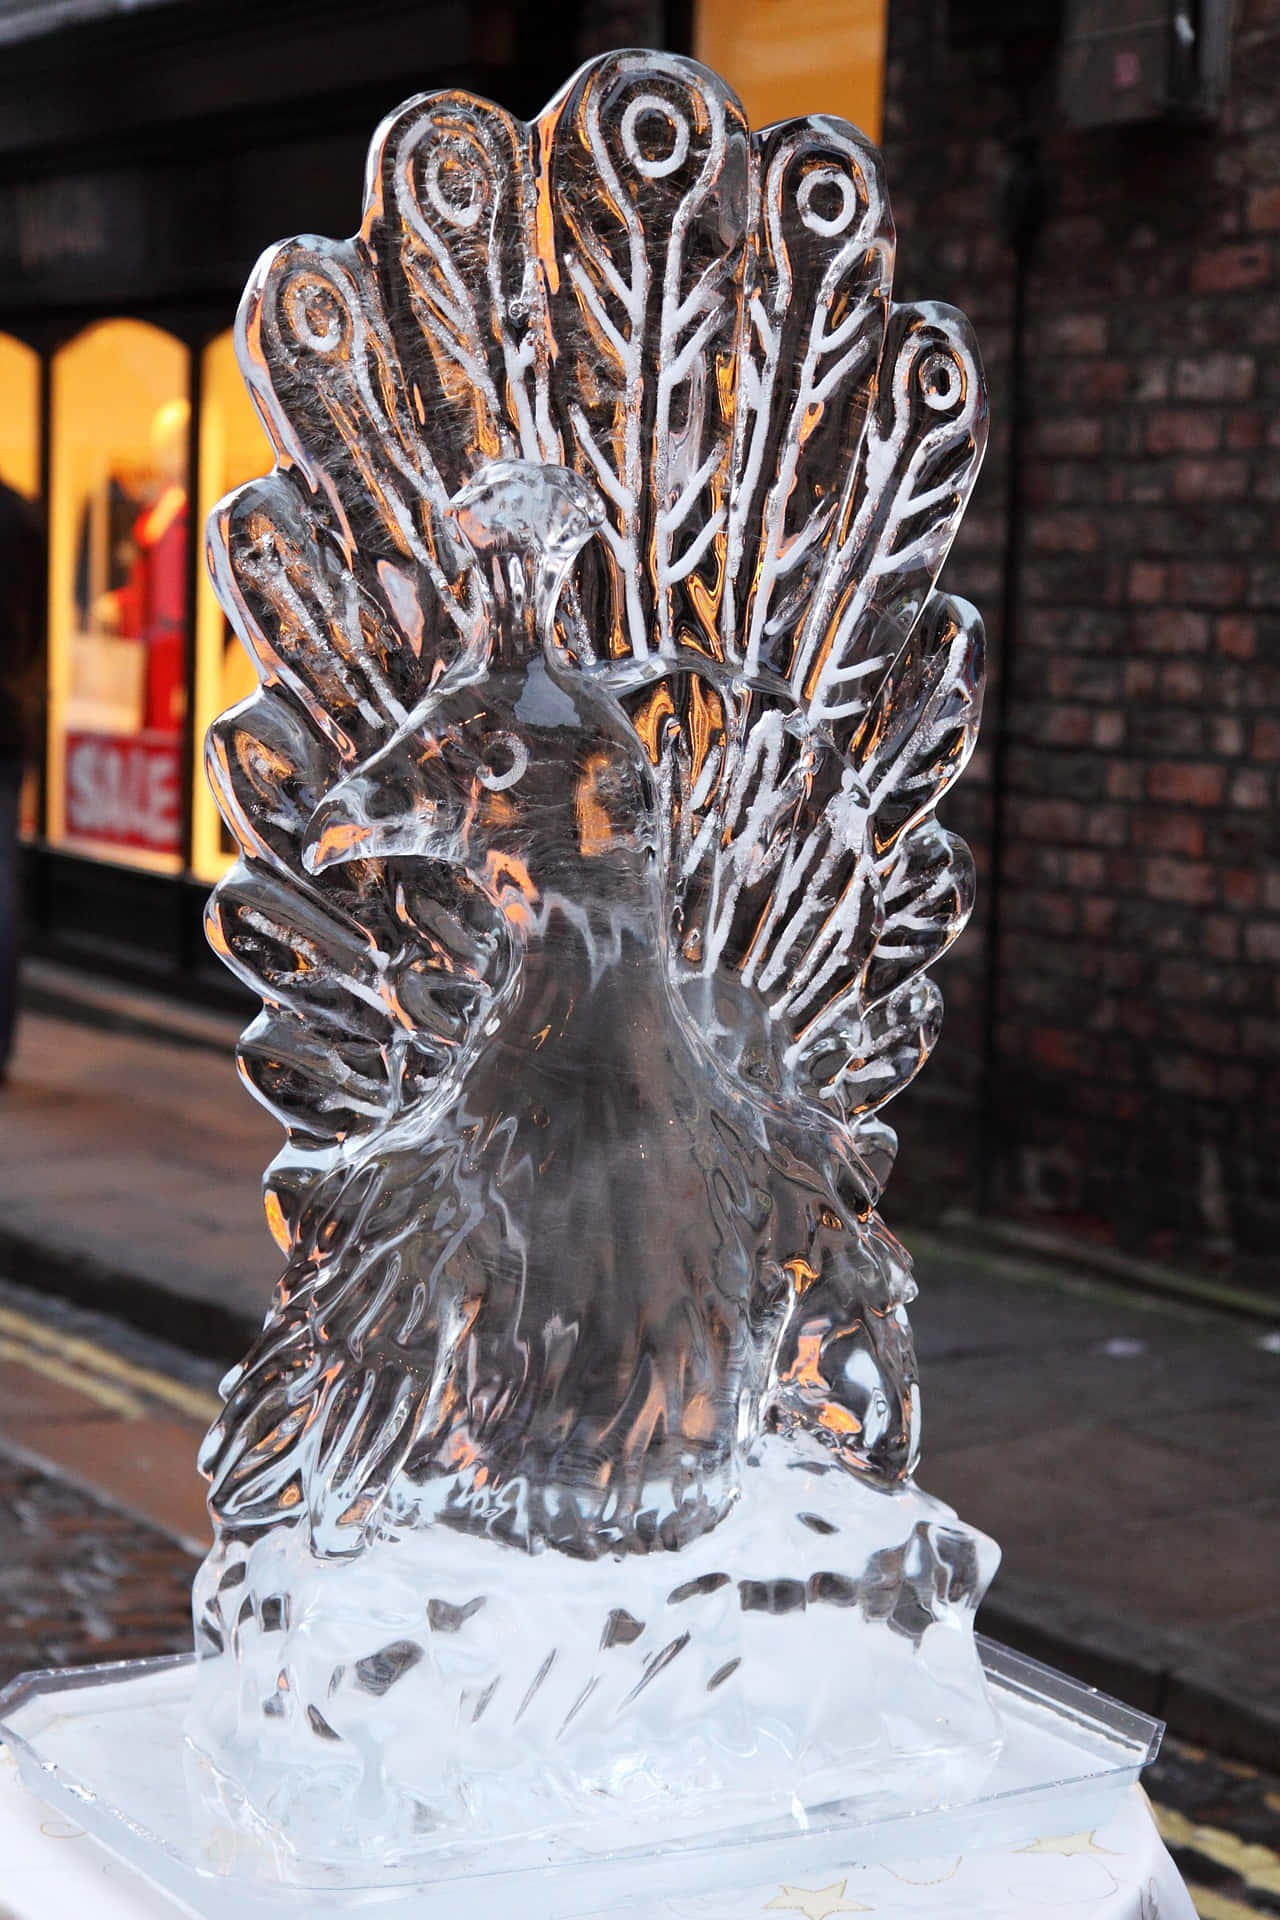 Masterpiece of Frozen Art: Exquisite Ice Sculpture Wallpaper